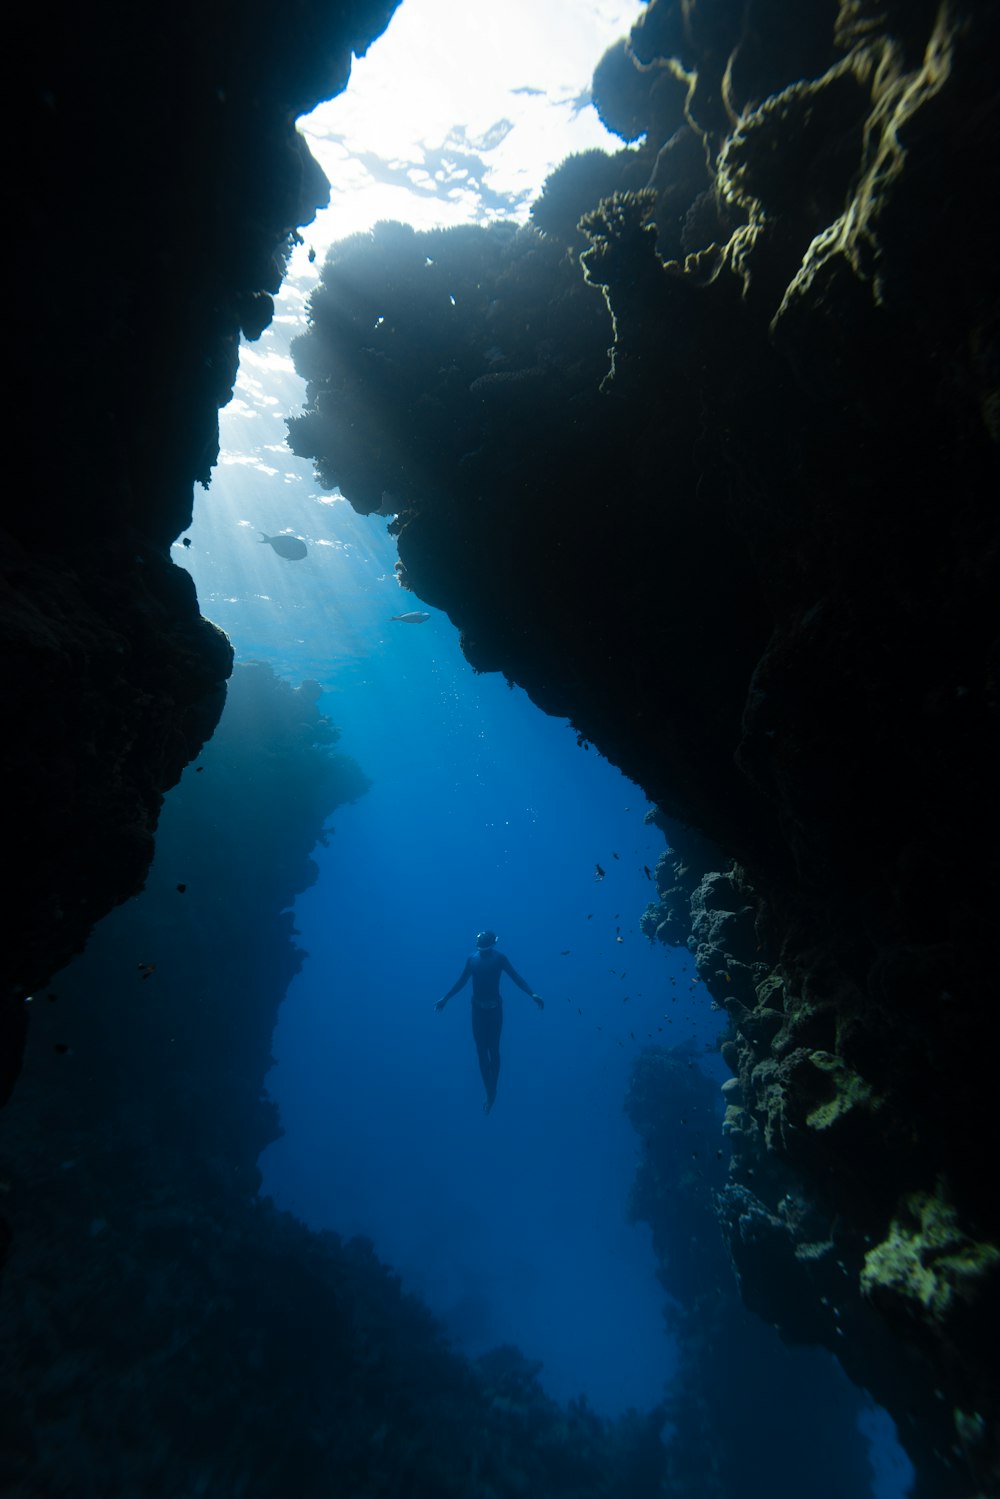 una persona che nuota nell'acqua vicino a una grotta